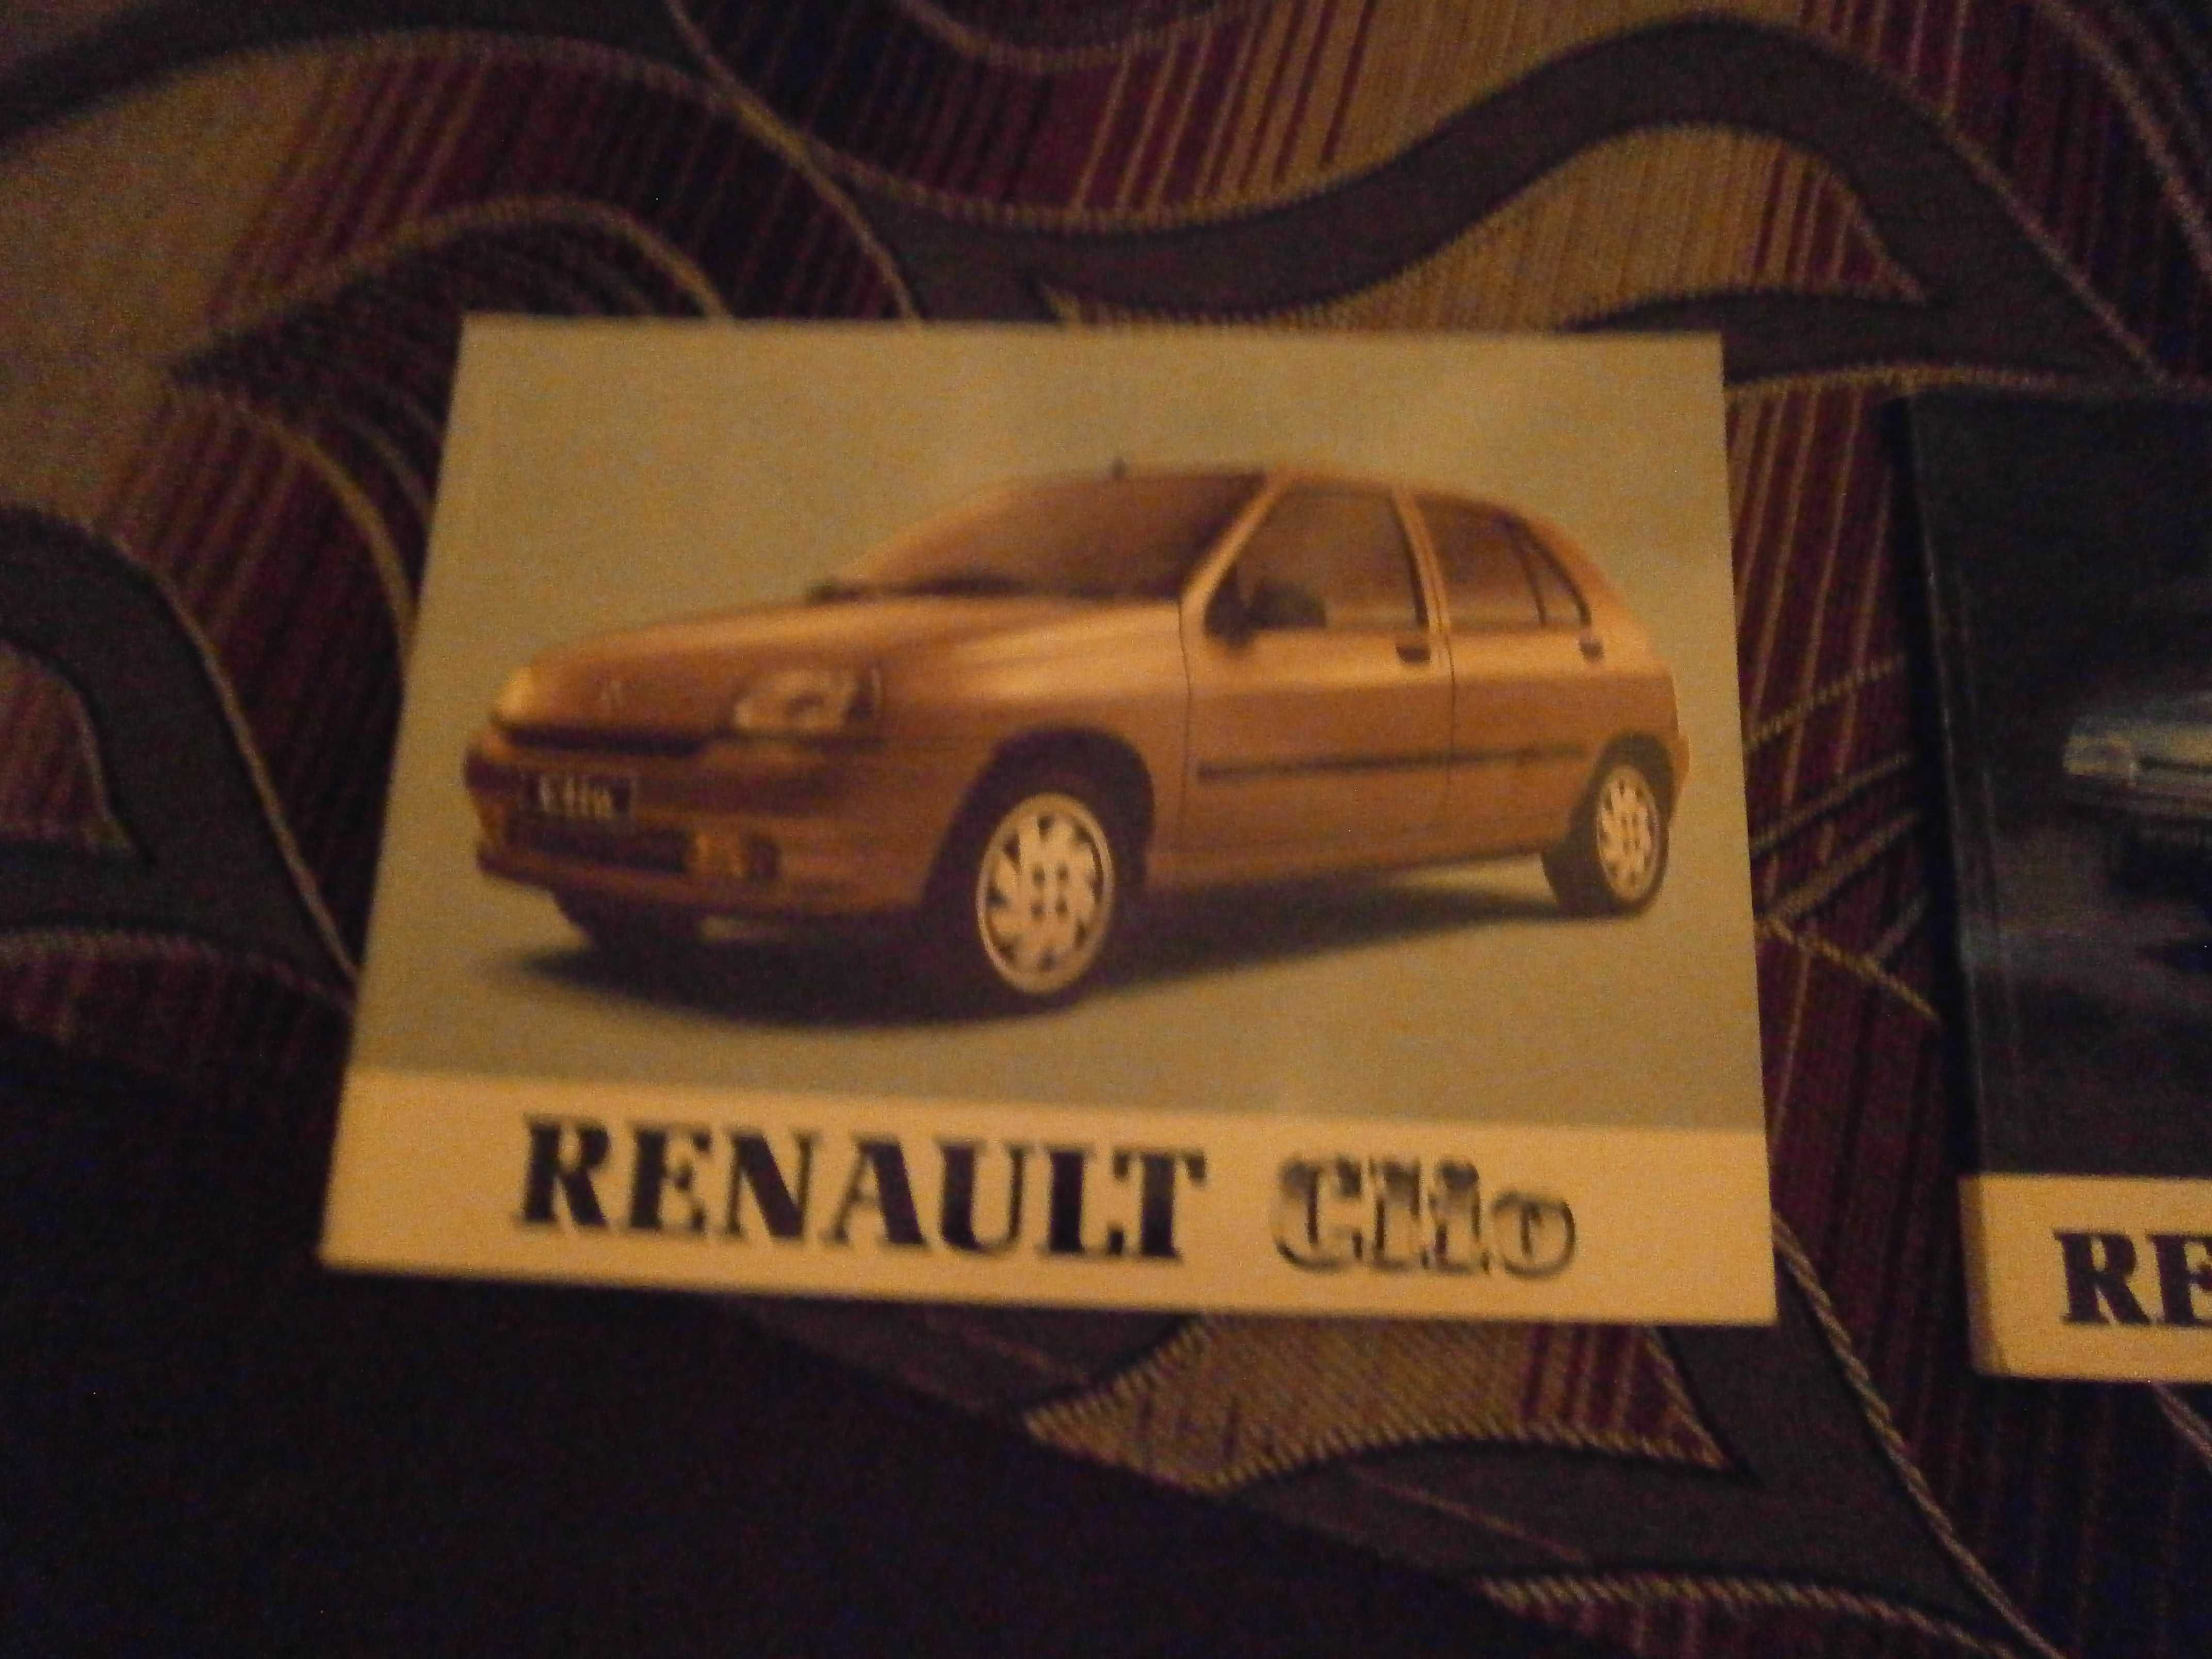 Książka obsługi Renault 21 Nevada, Renault Clio